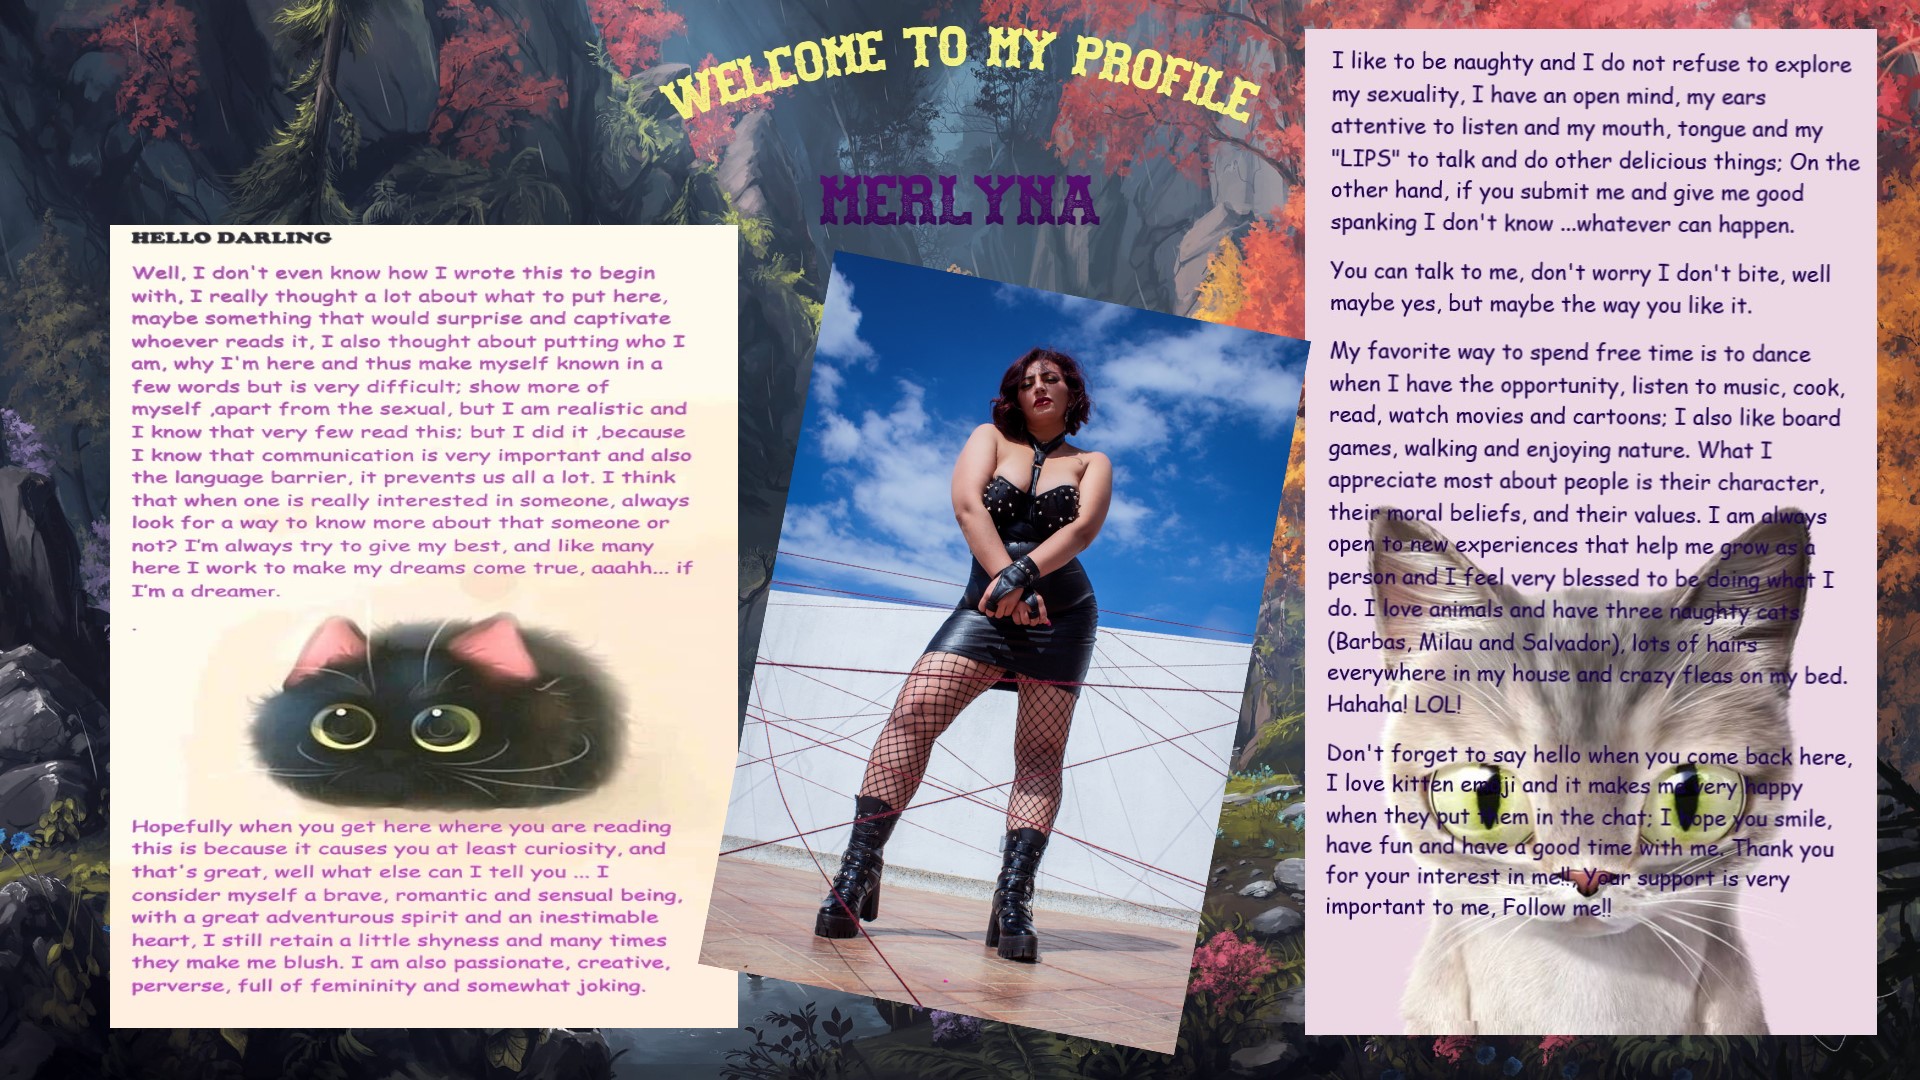 Merlyna11 profile image: 1